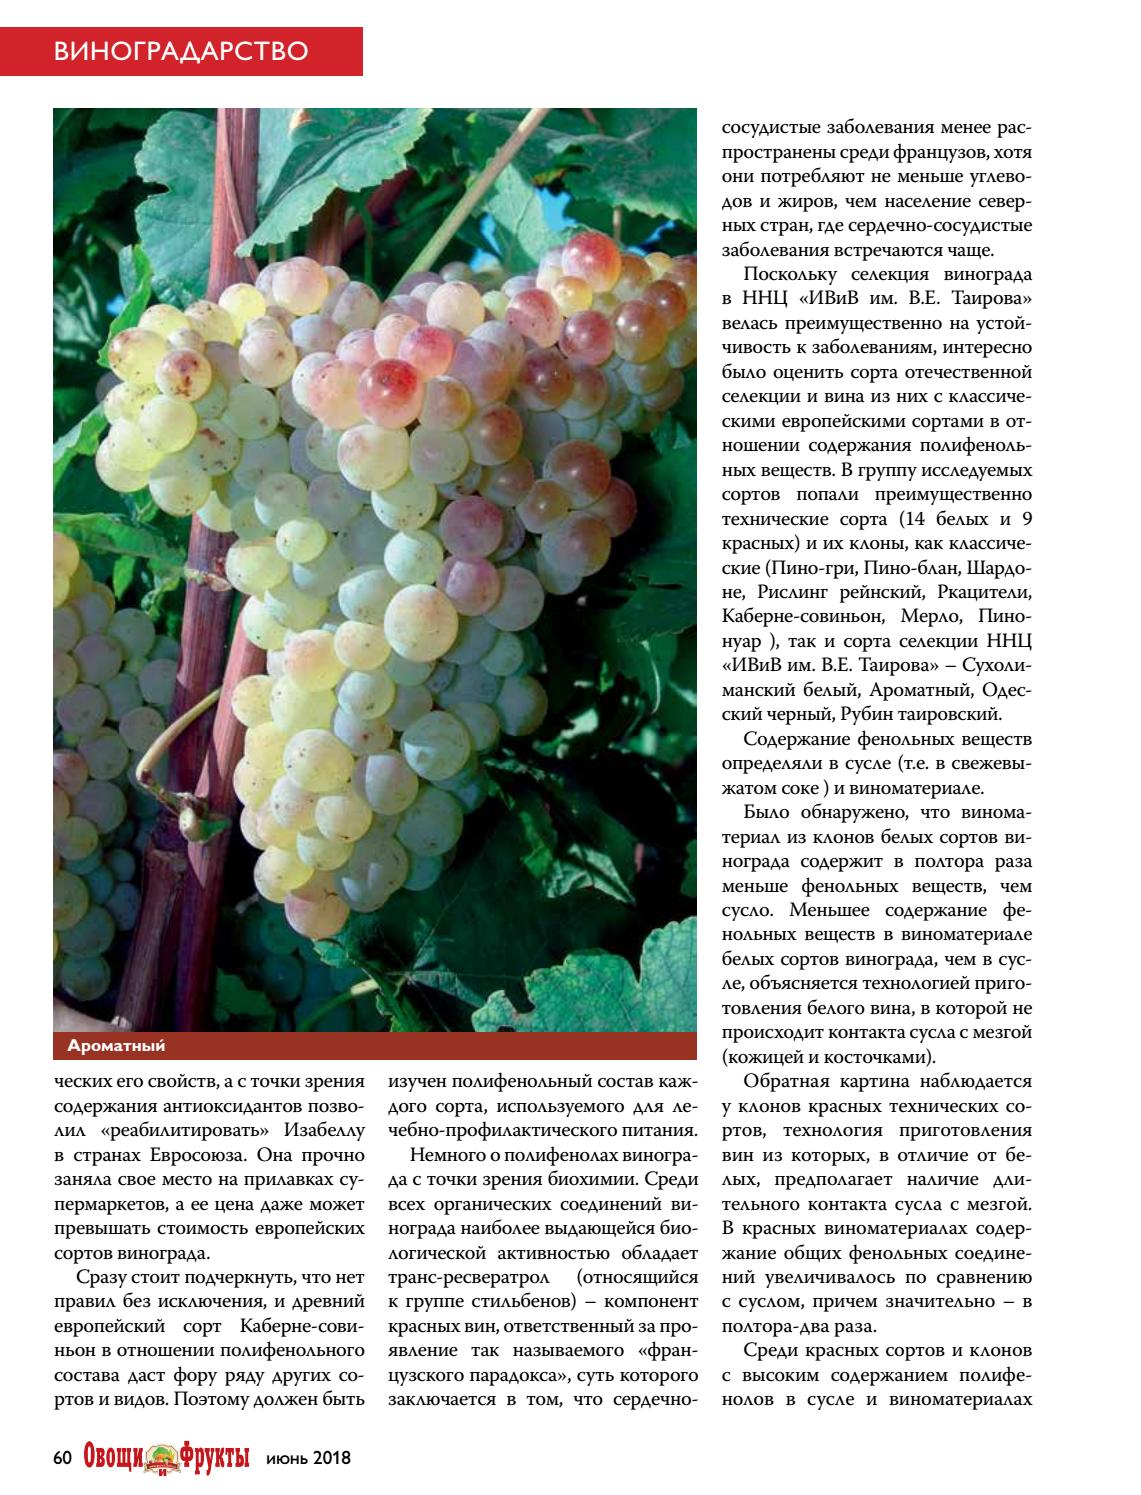 Виноград ркацители: описание сорта винограда